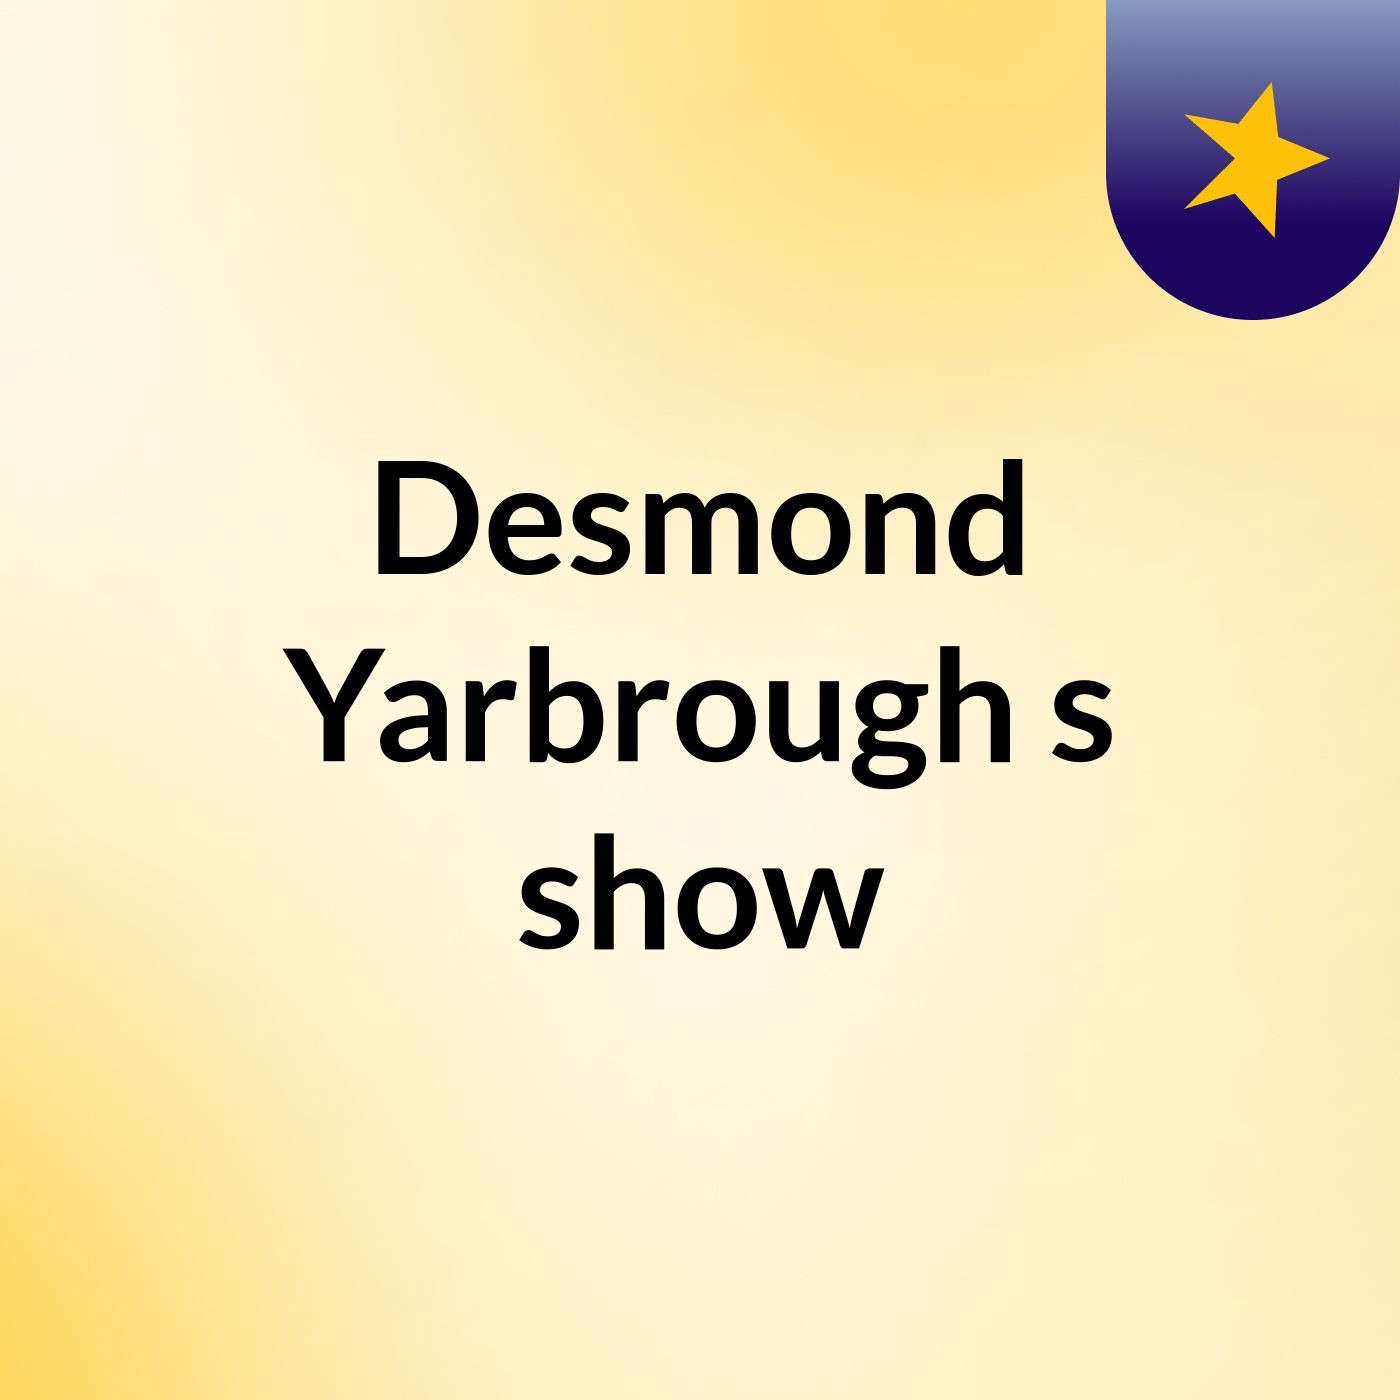 Episode 23 - Desmond Yarbrough's show